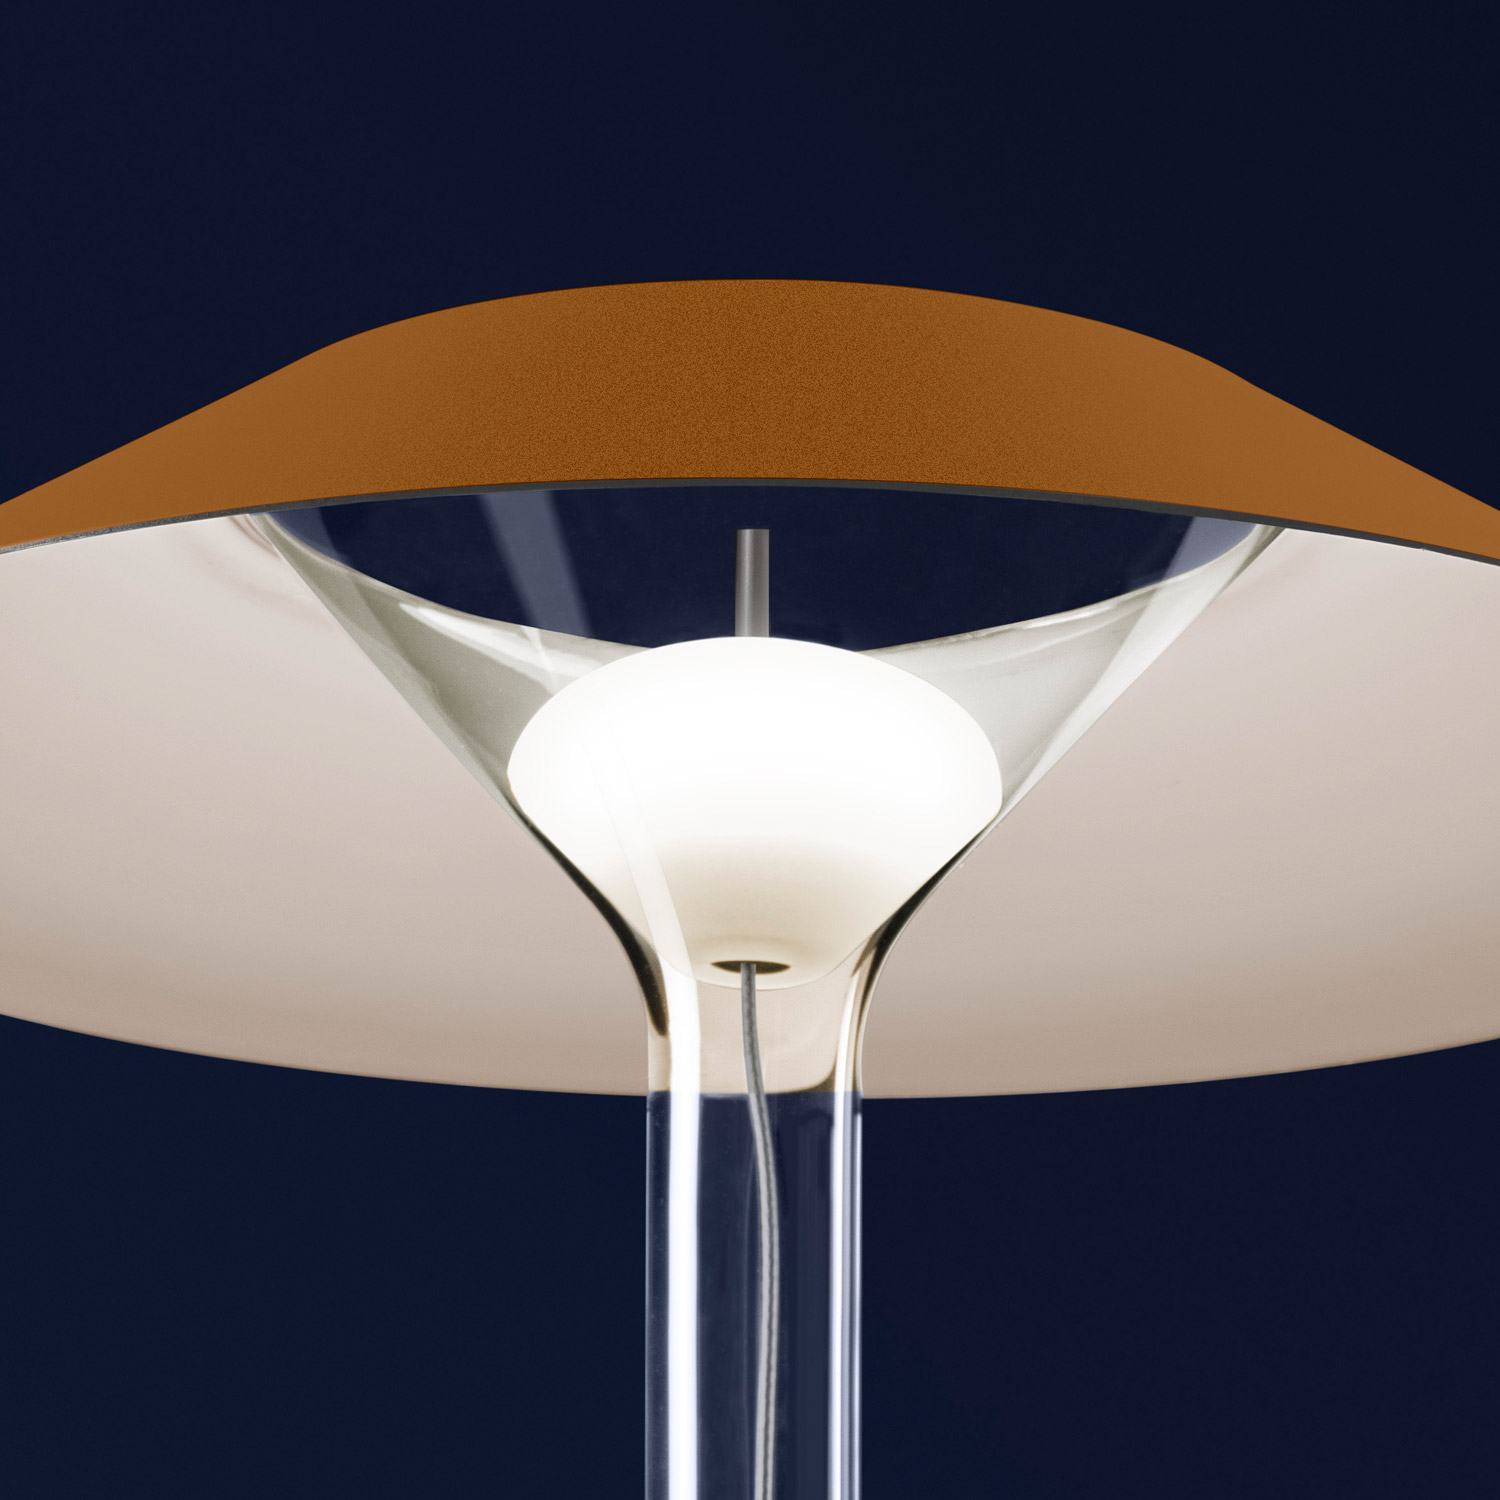 Chapeaux M steel table lamp by Foscarini